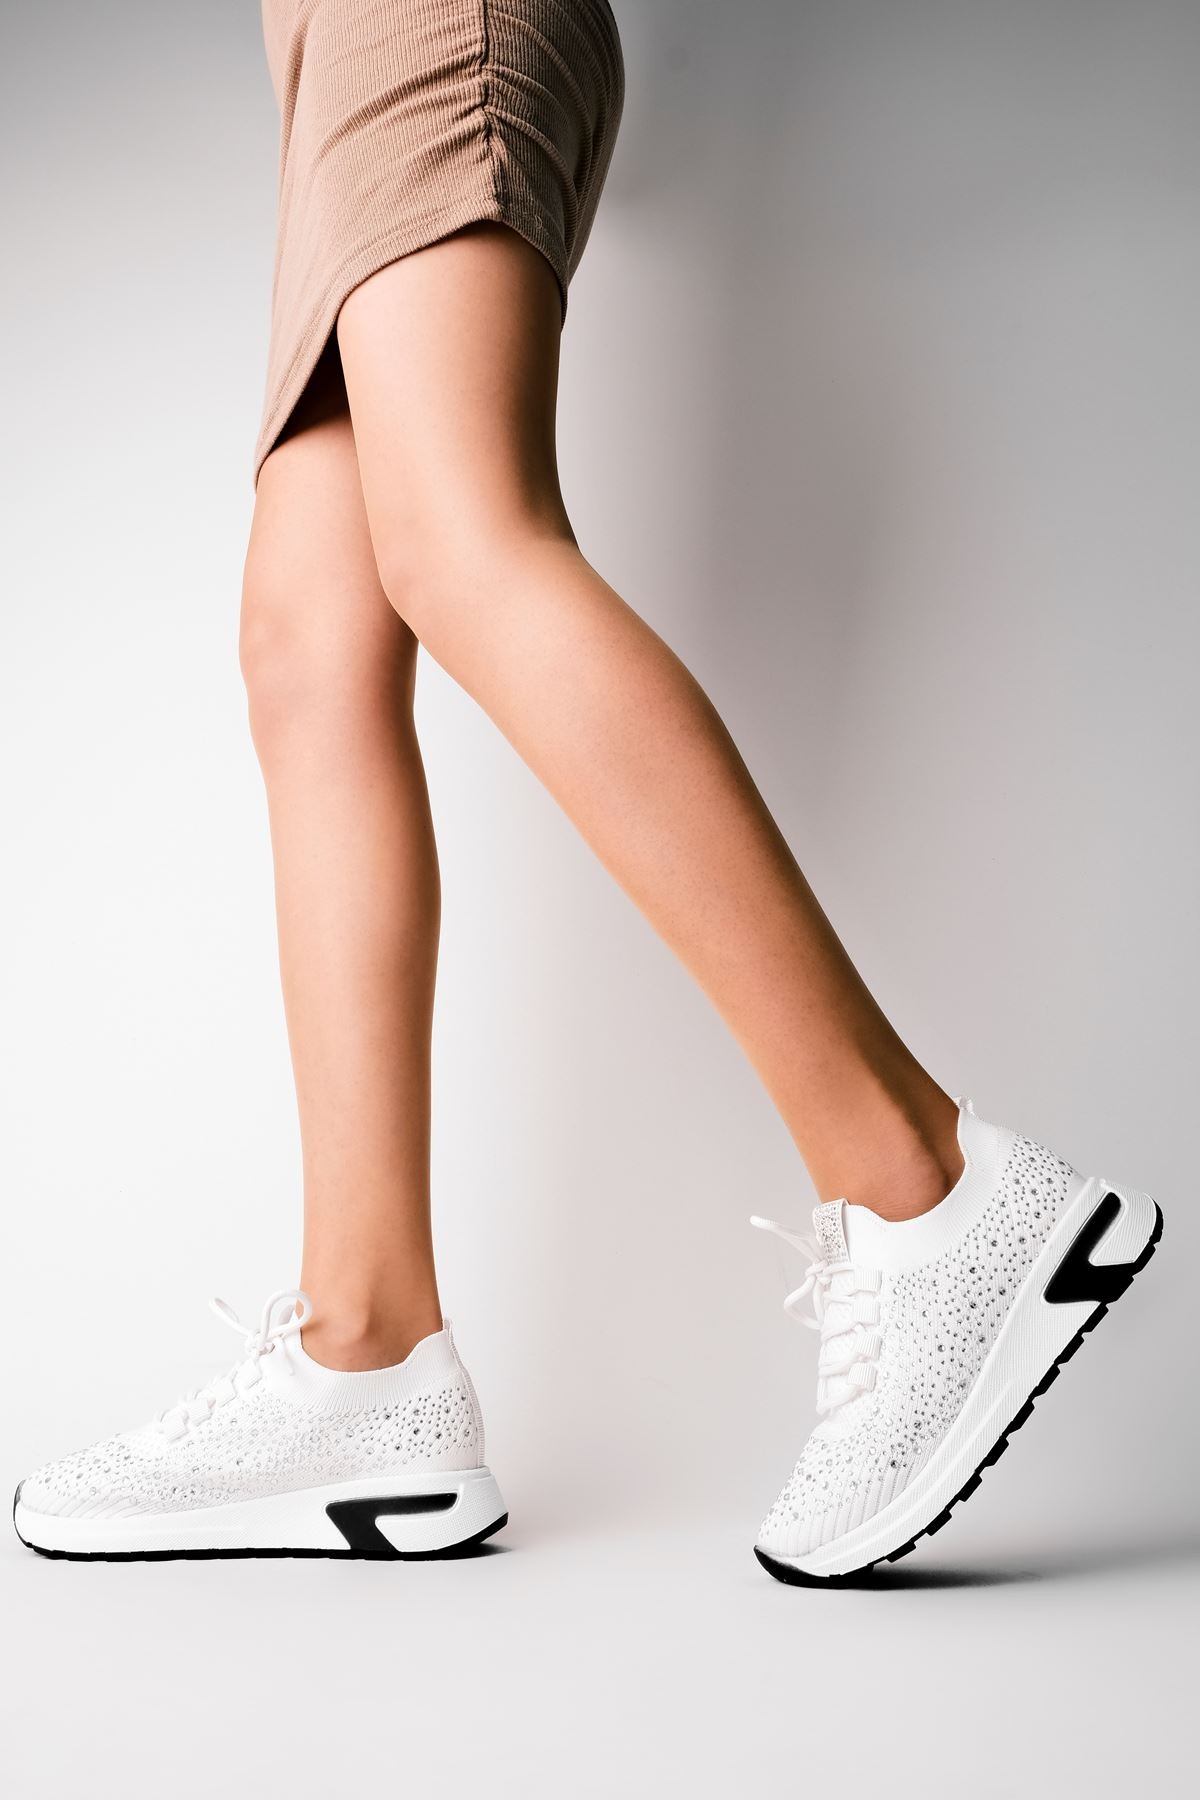 Nessy Triko Taşlı Kadın Spor Ayakkabı (B3081) - Beyaz